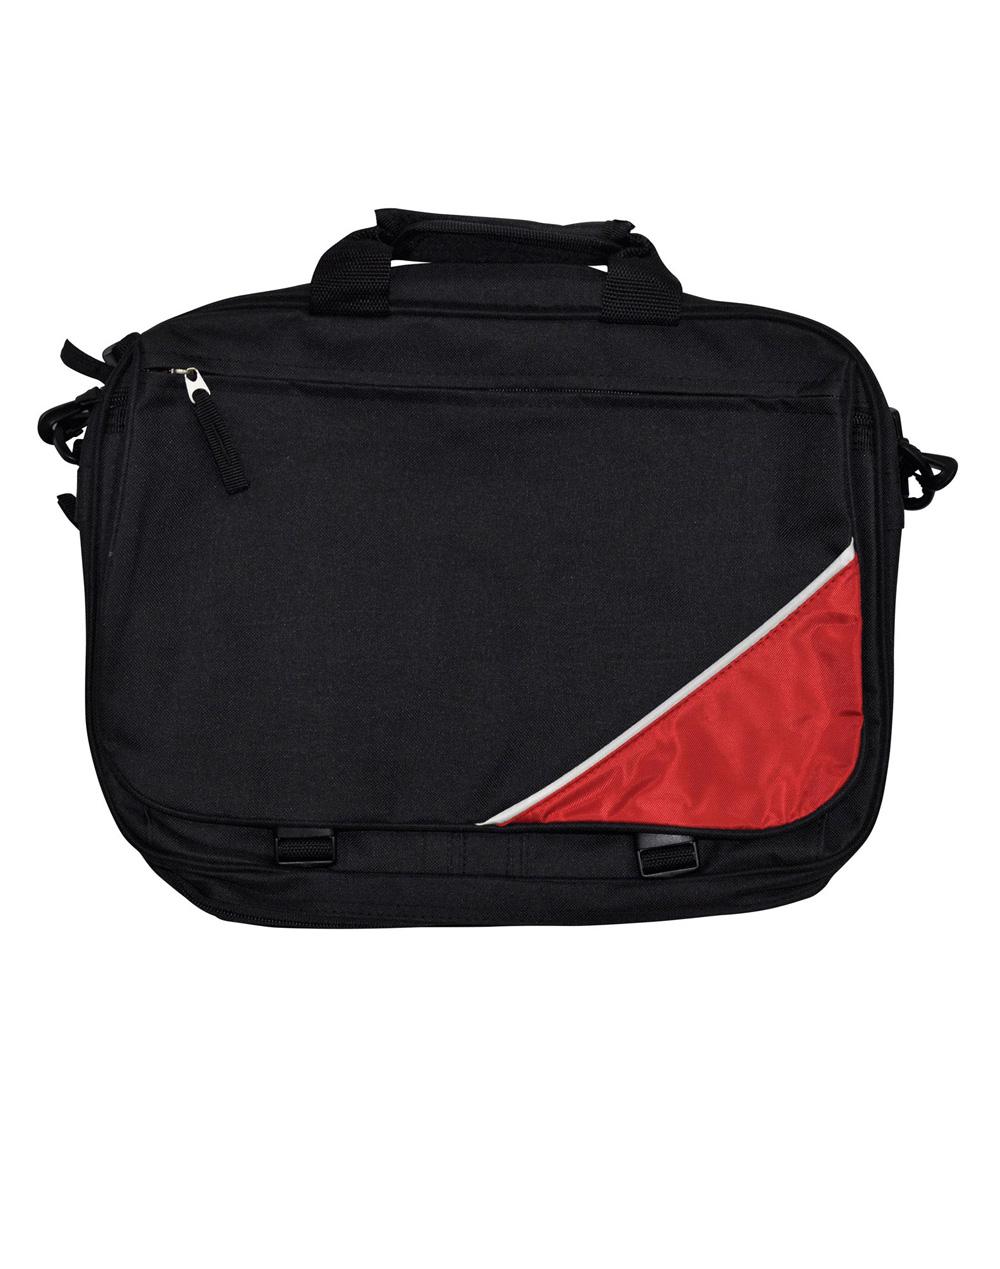 B1002 MOTION Flap Satchel/Shoulder Bag